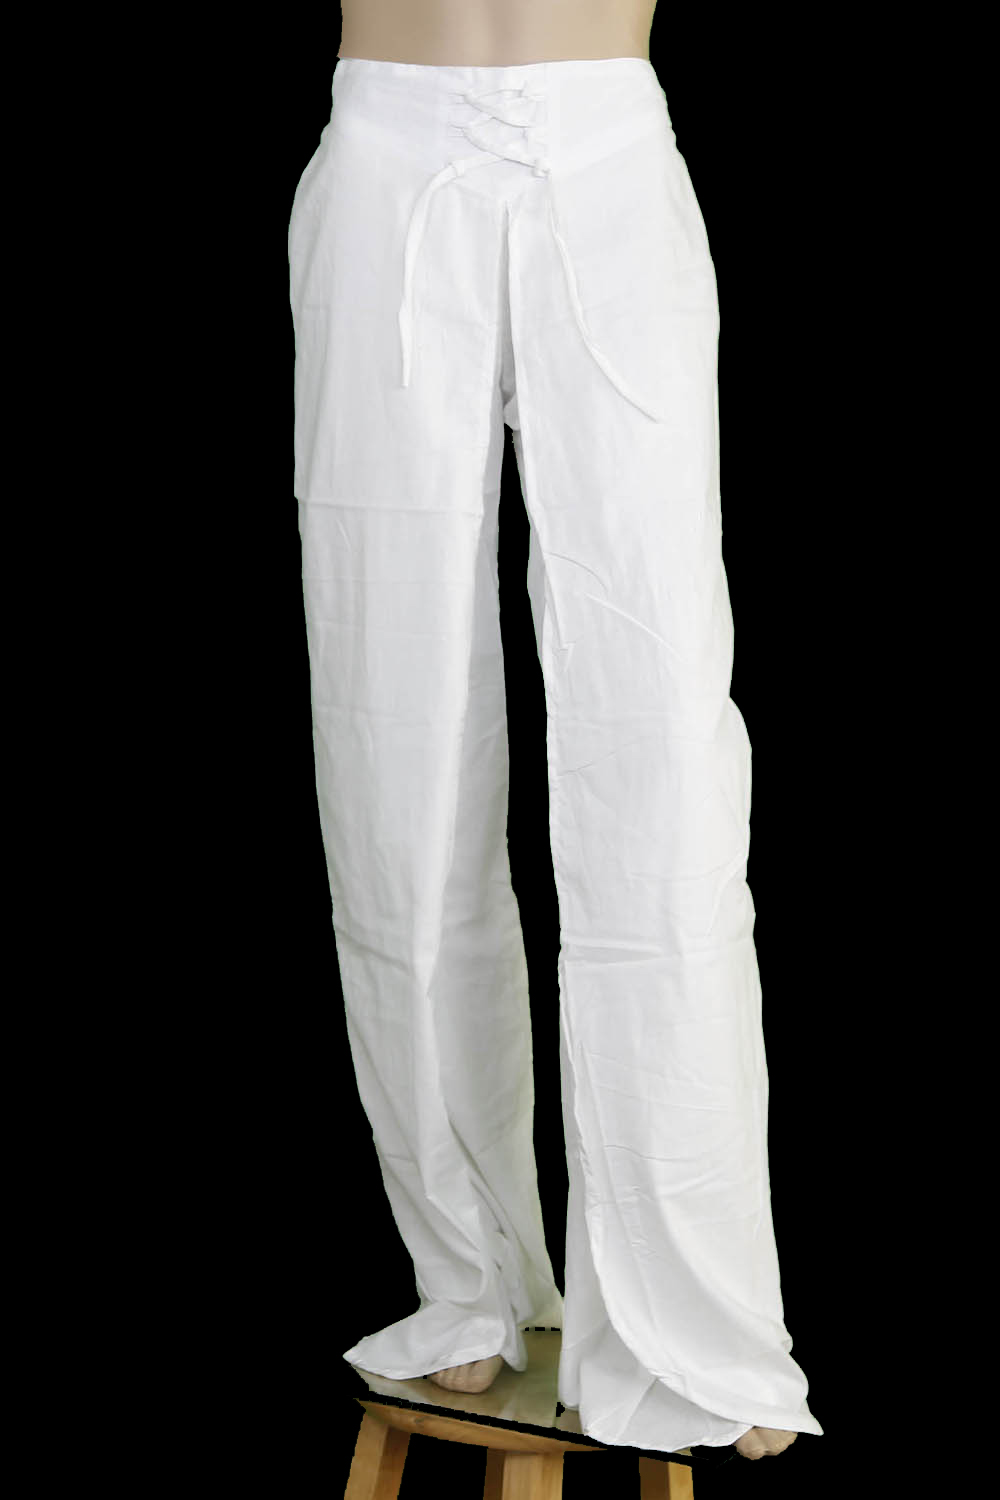 Blank White Rayon Hippie Wrap Pants for Tie Dye